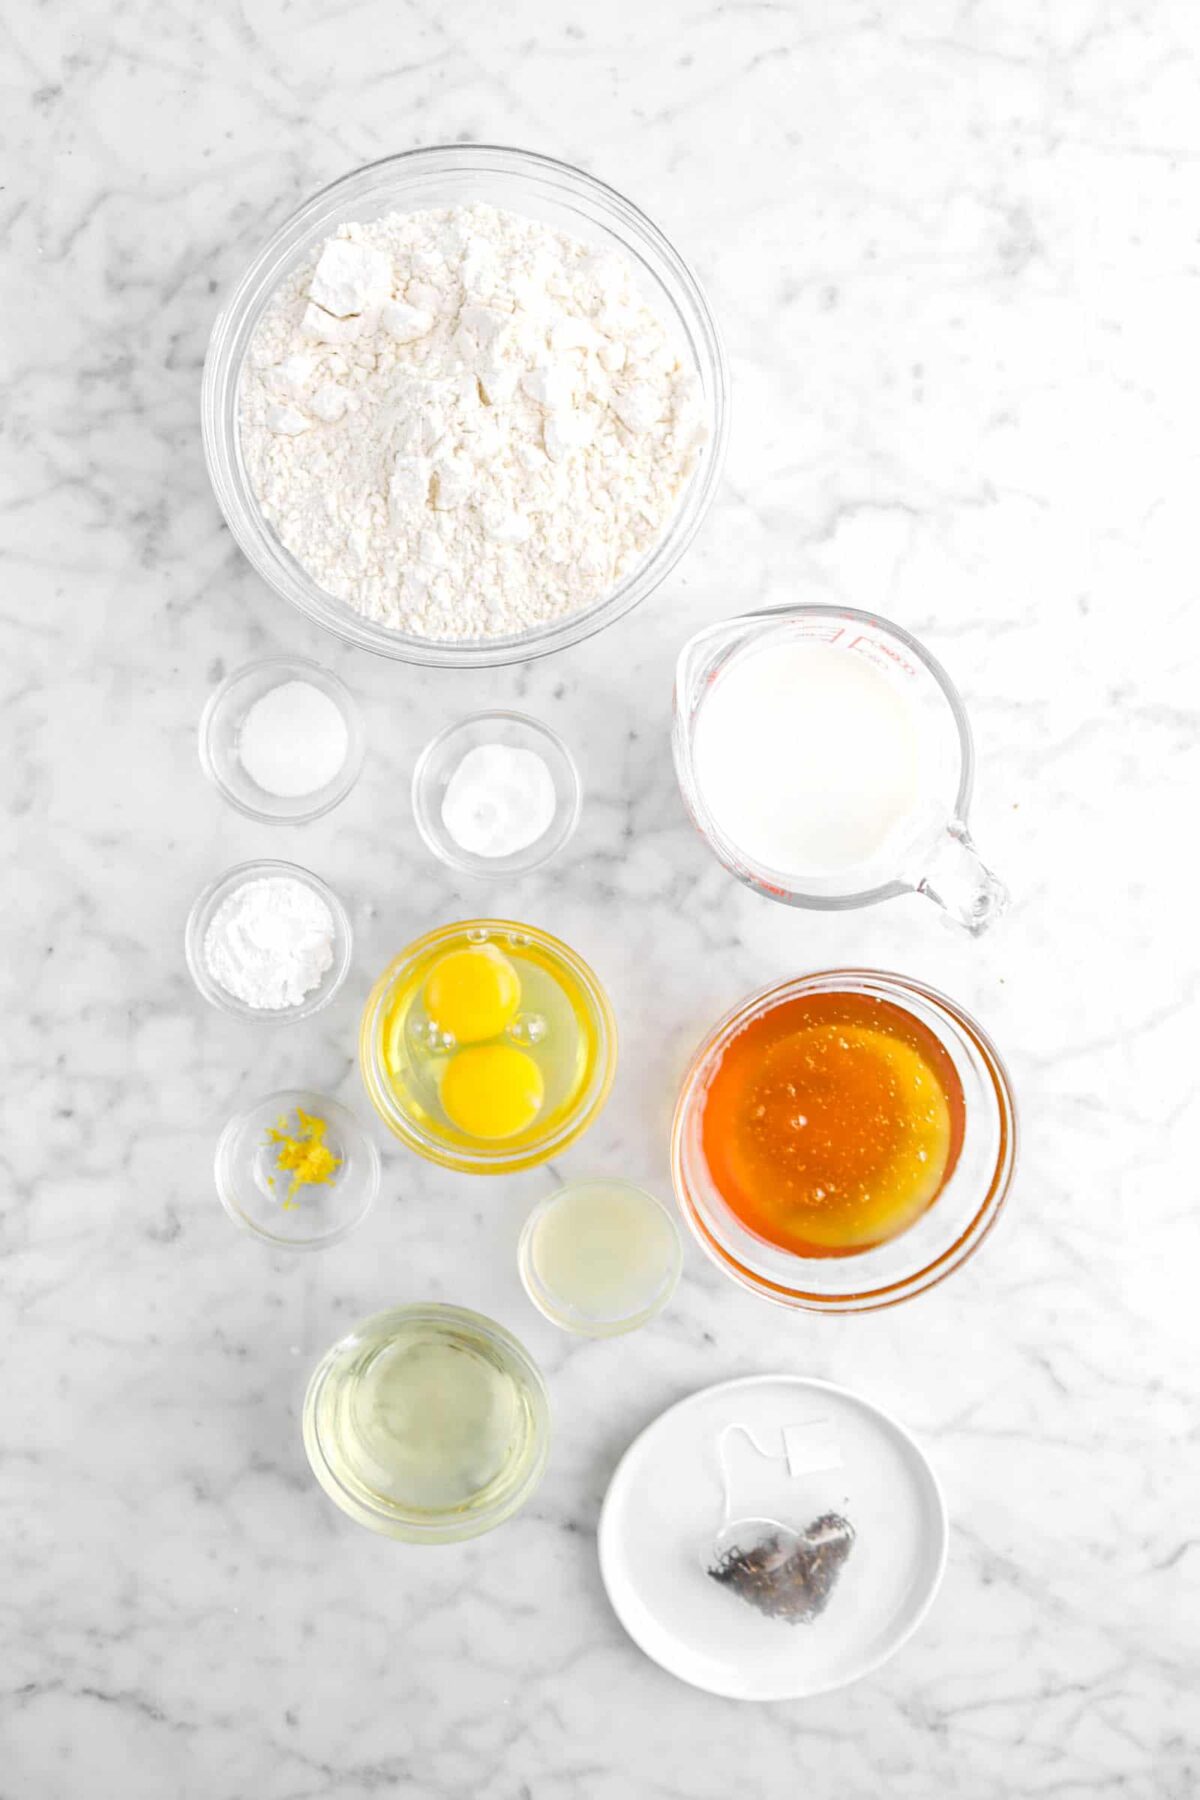 flour, salt, baking soda, baking powder, eggs, lemon zest, lemon juice, vegetable oil, tea bag, honey, and milk on marble counter